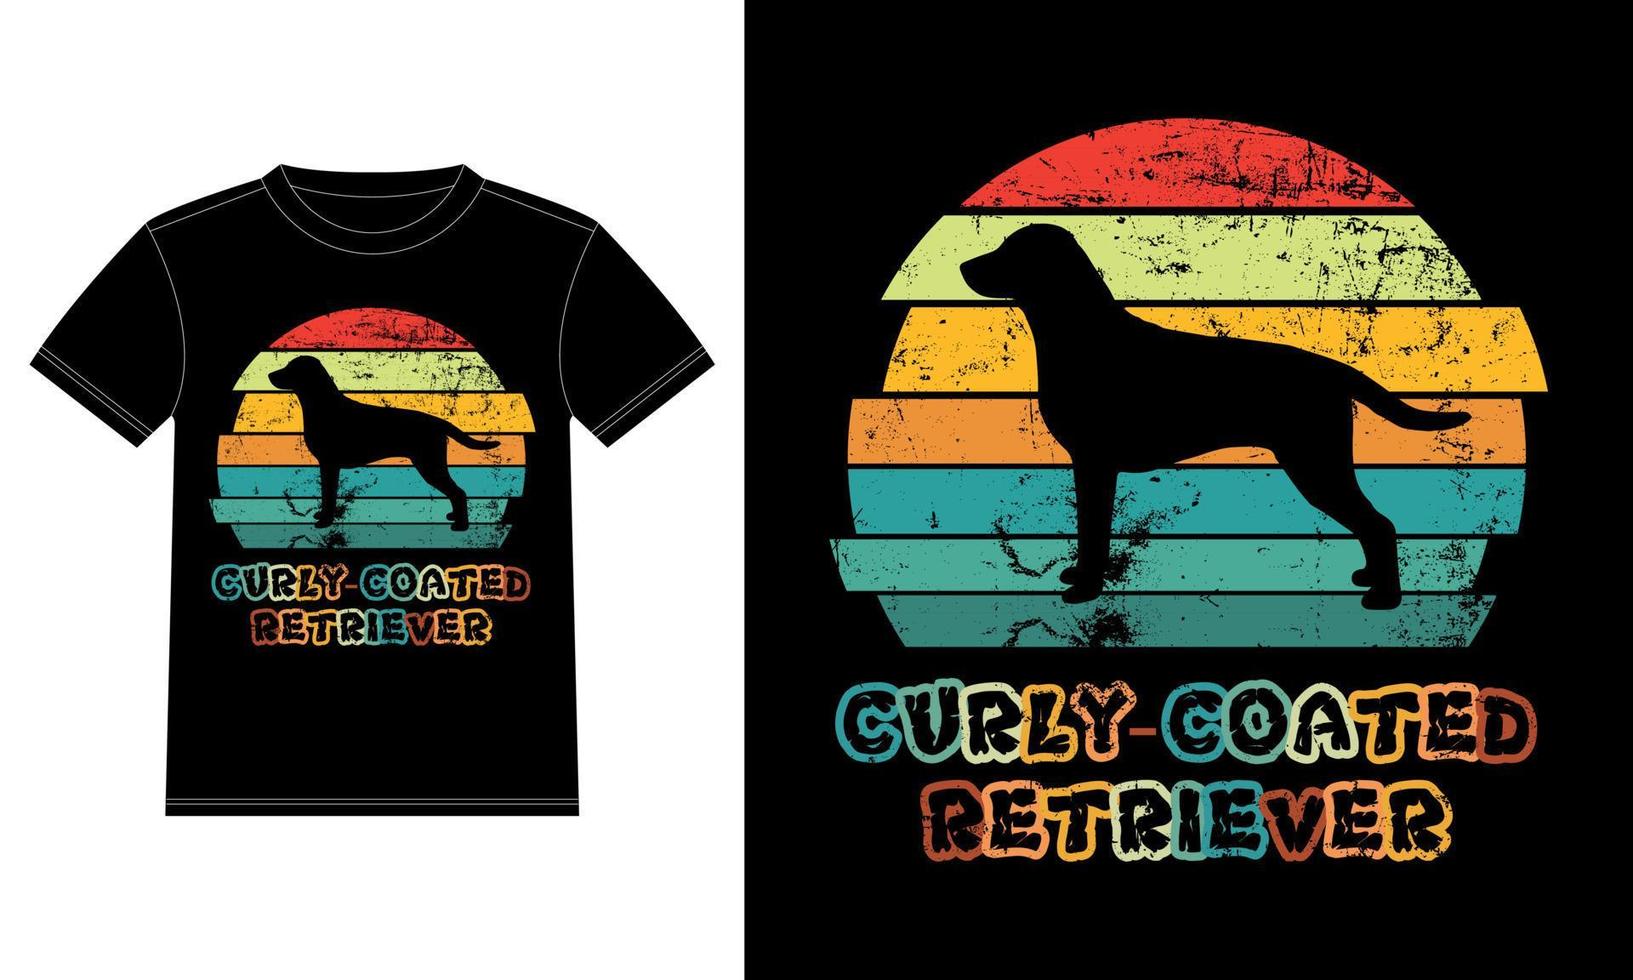 Sonnenuntergang-Silhouettegeschenke des lustigen gelockten überzogenen Retrievers Vintager retro wesentlicher T - Shirt des Hundeliebhaber-Hundebesitzers vektor